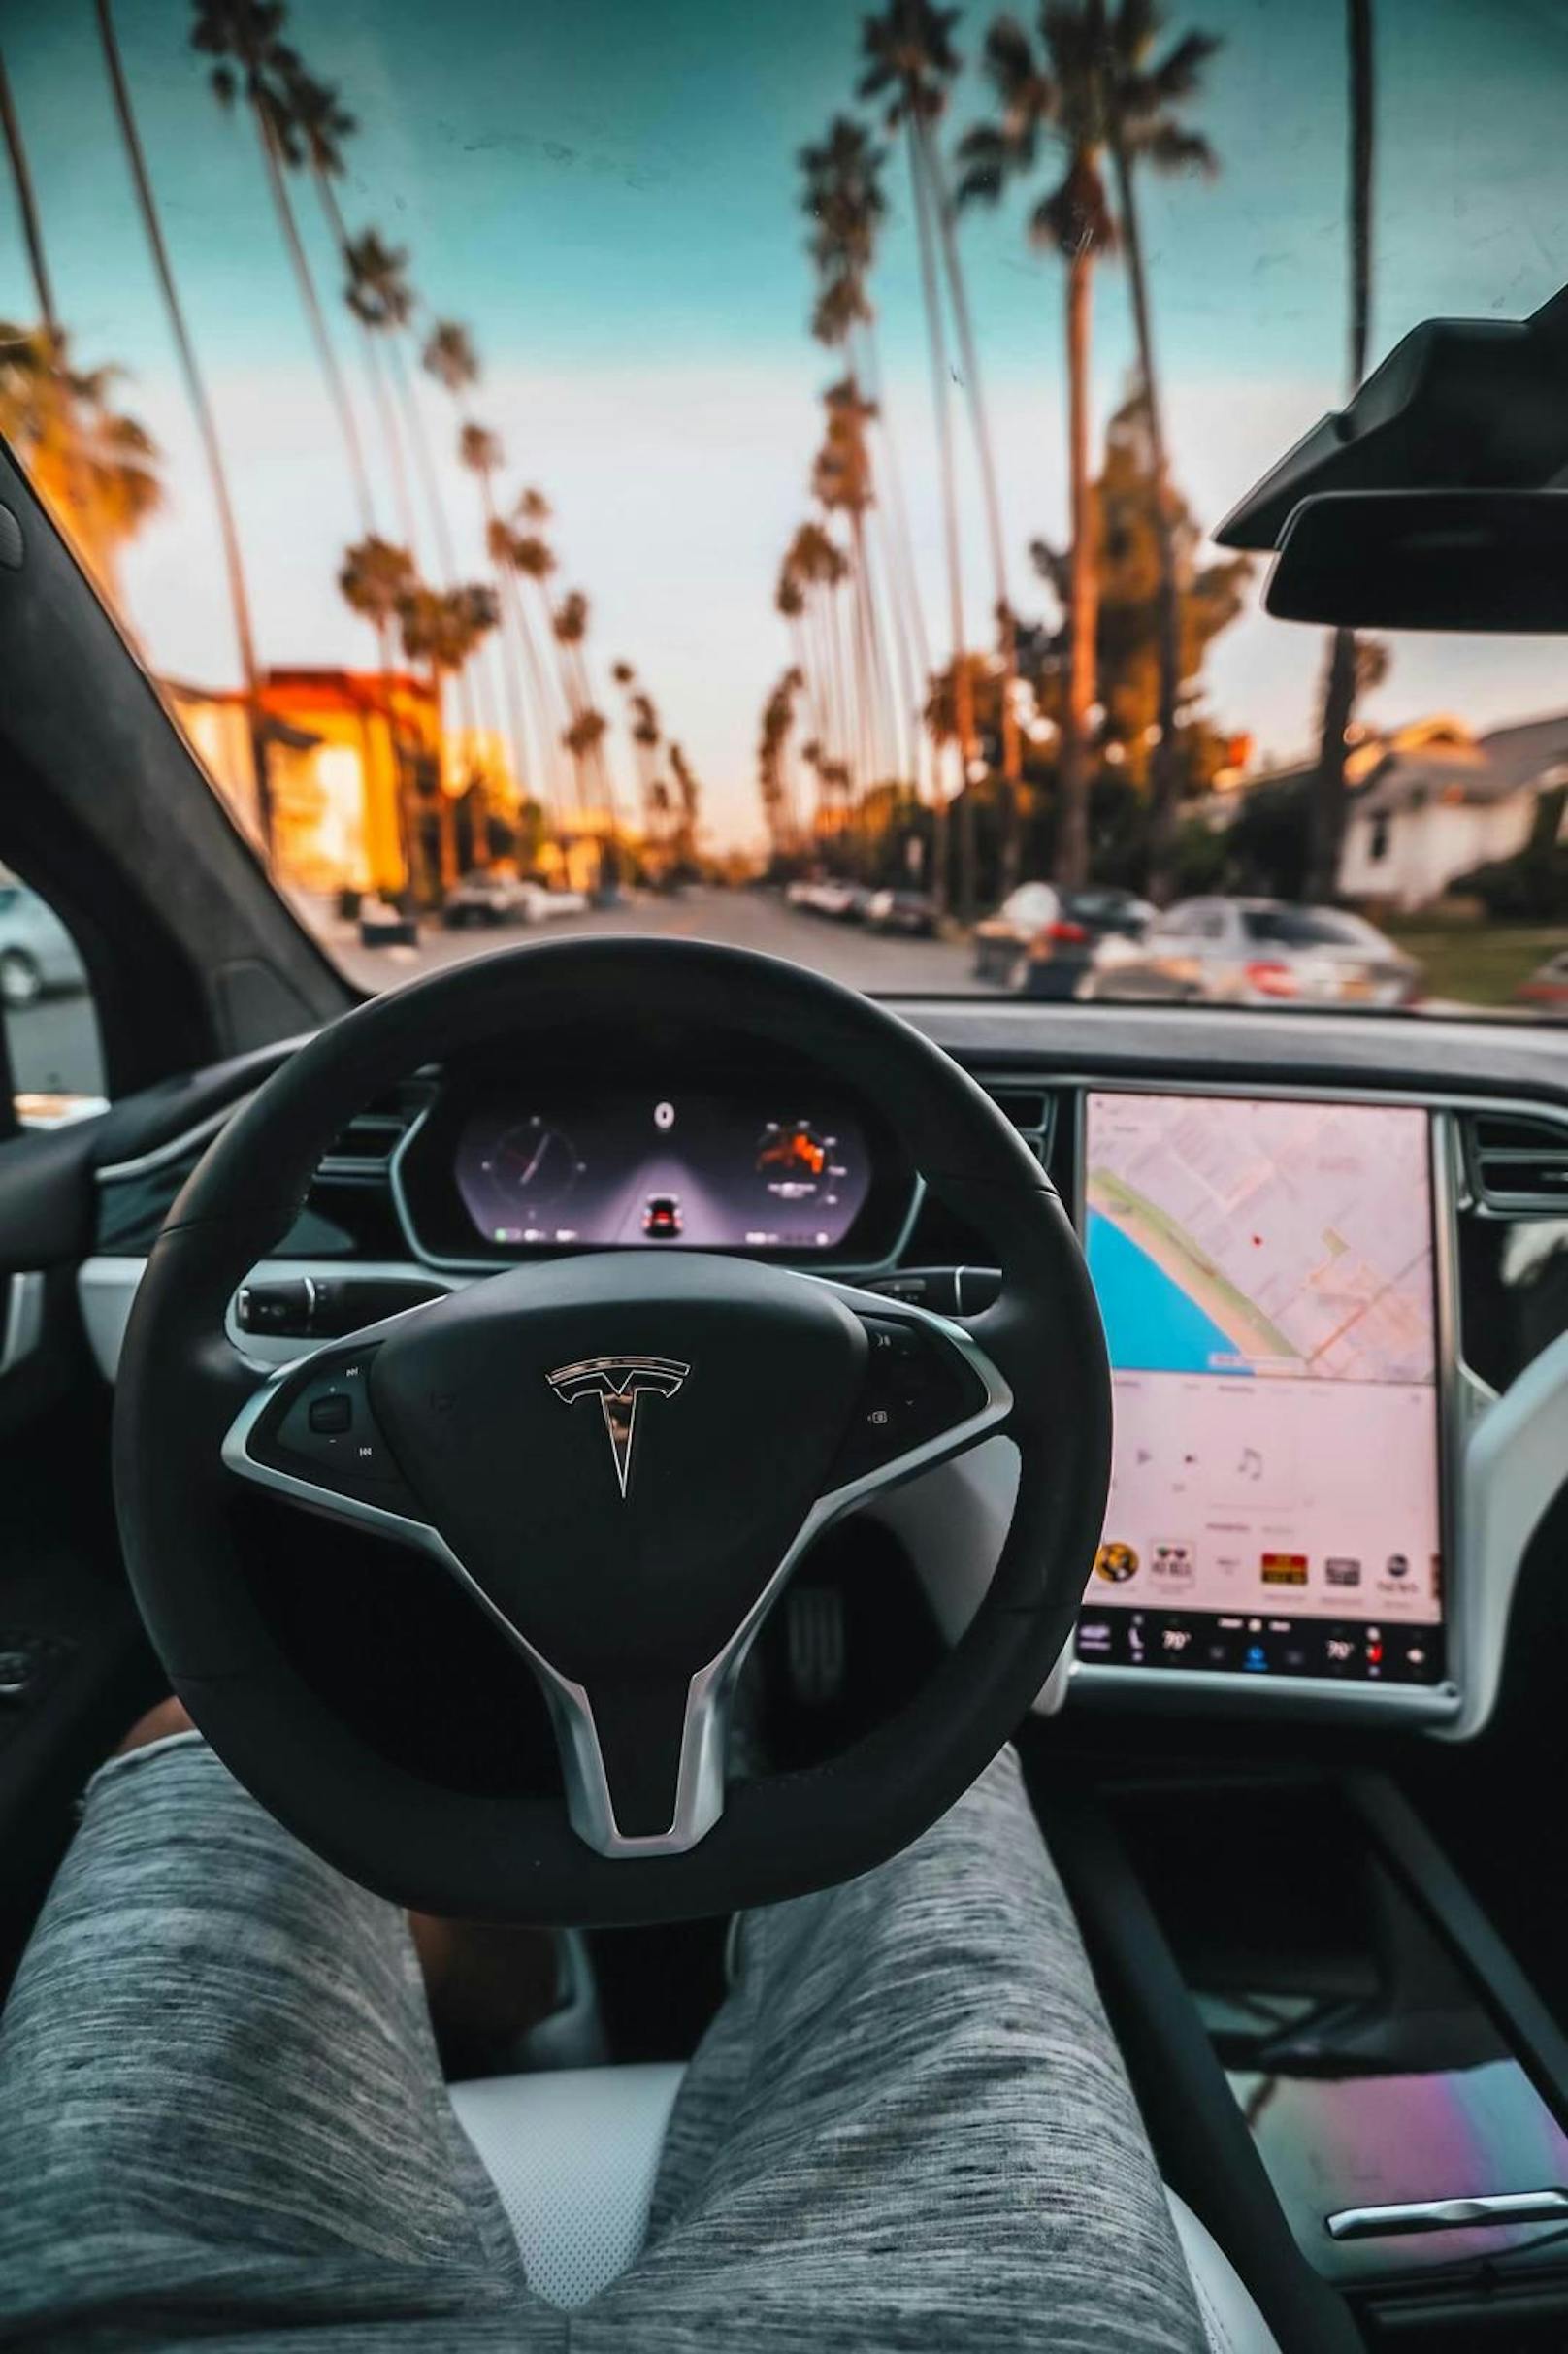 Das sei "absolut verrückt", findet ein Tesla-Fahrer, der die Funktion selbst ausprobiert hat.